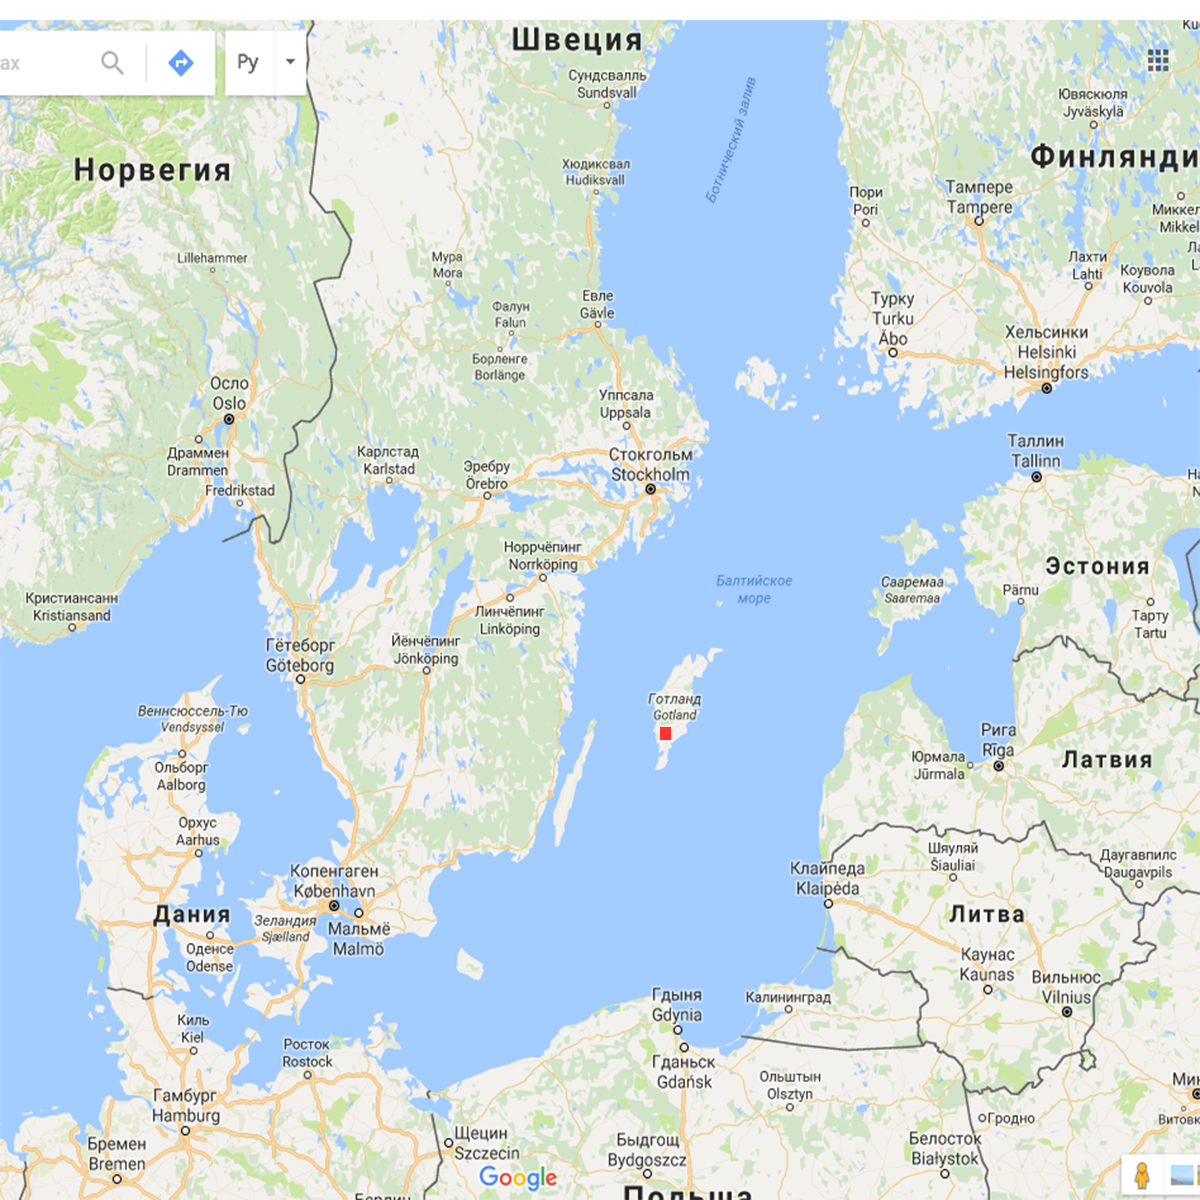 Готланд на карте балтийского моря кому принадлежит. Остров Готланд на карте Балтийского моря. Готланд в Балтийском море. Готланд остров в Балтийском море на карте. О Готланд на карте Балтийского моря.